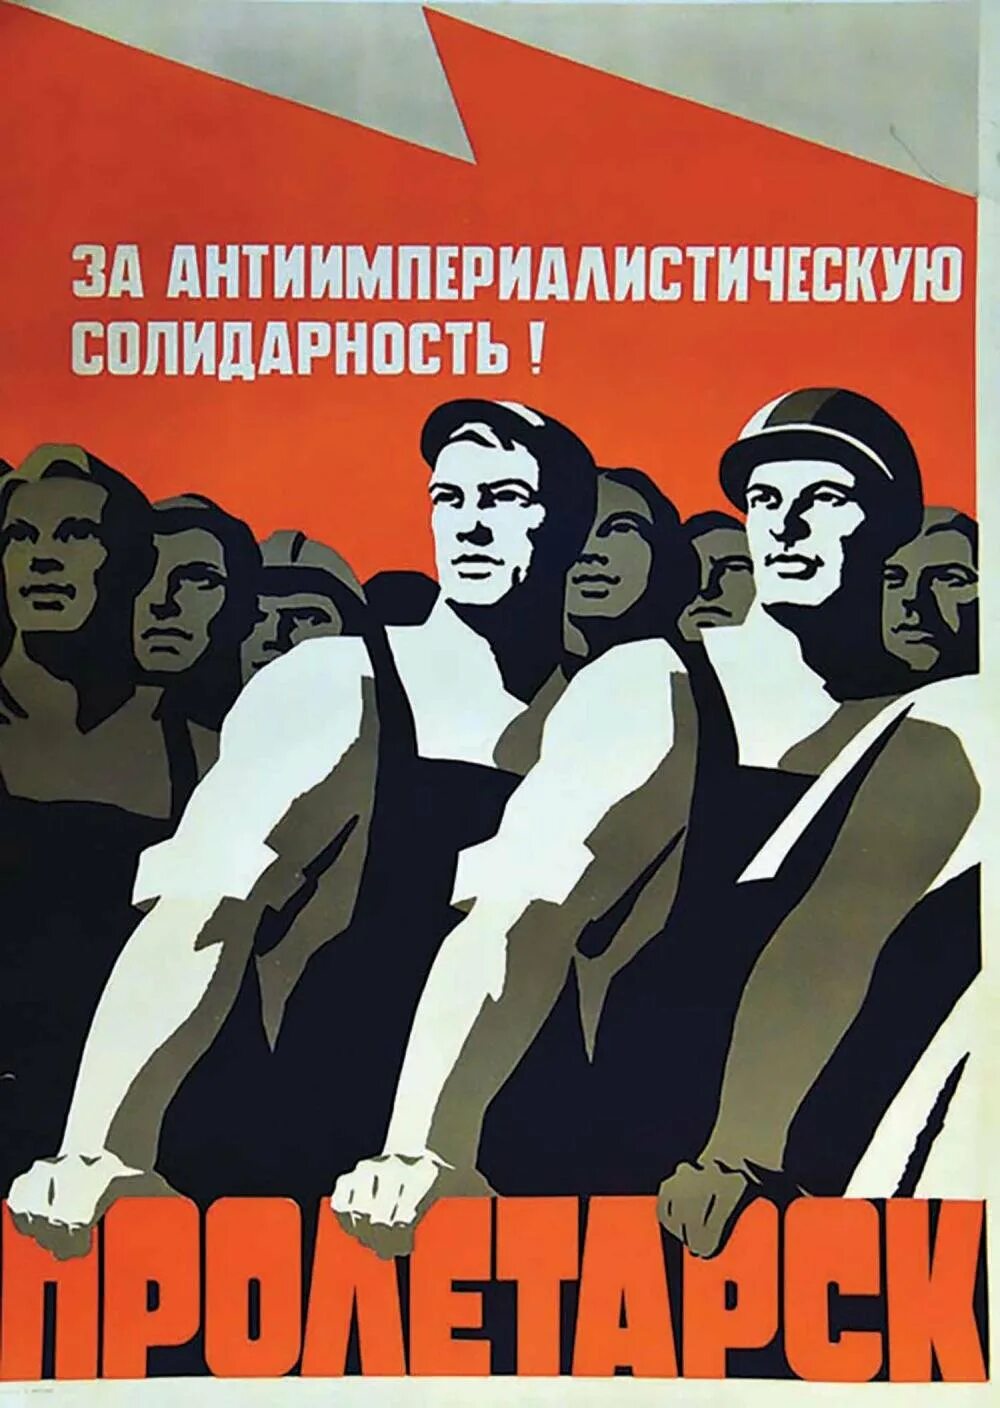 Солидарность плакат. Солидарность плакат СССР. Международная солидарность плакат. Справедливость плакат. С днем мужской солидарности картинки